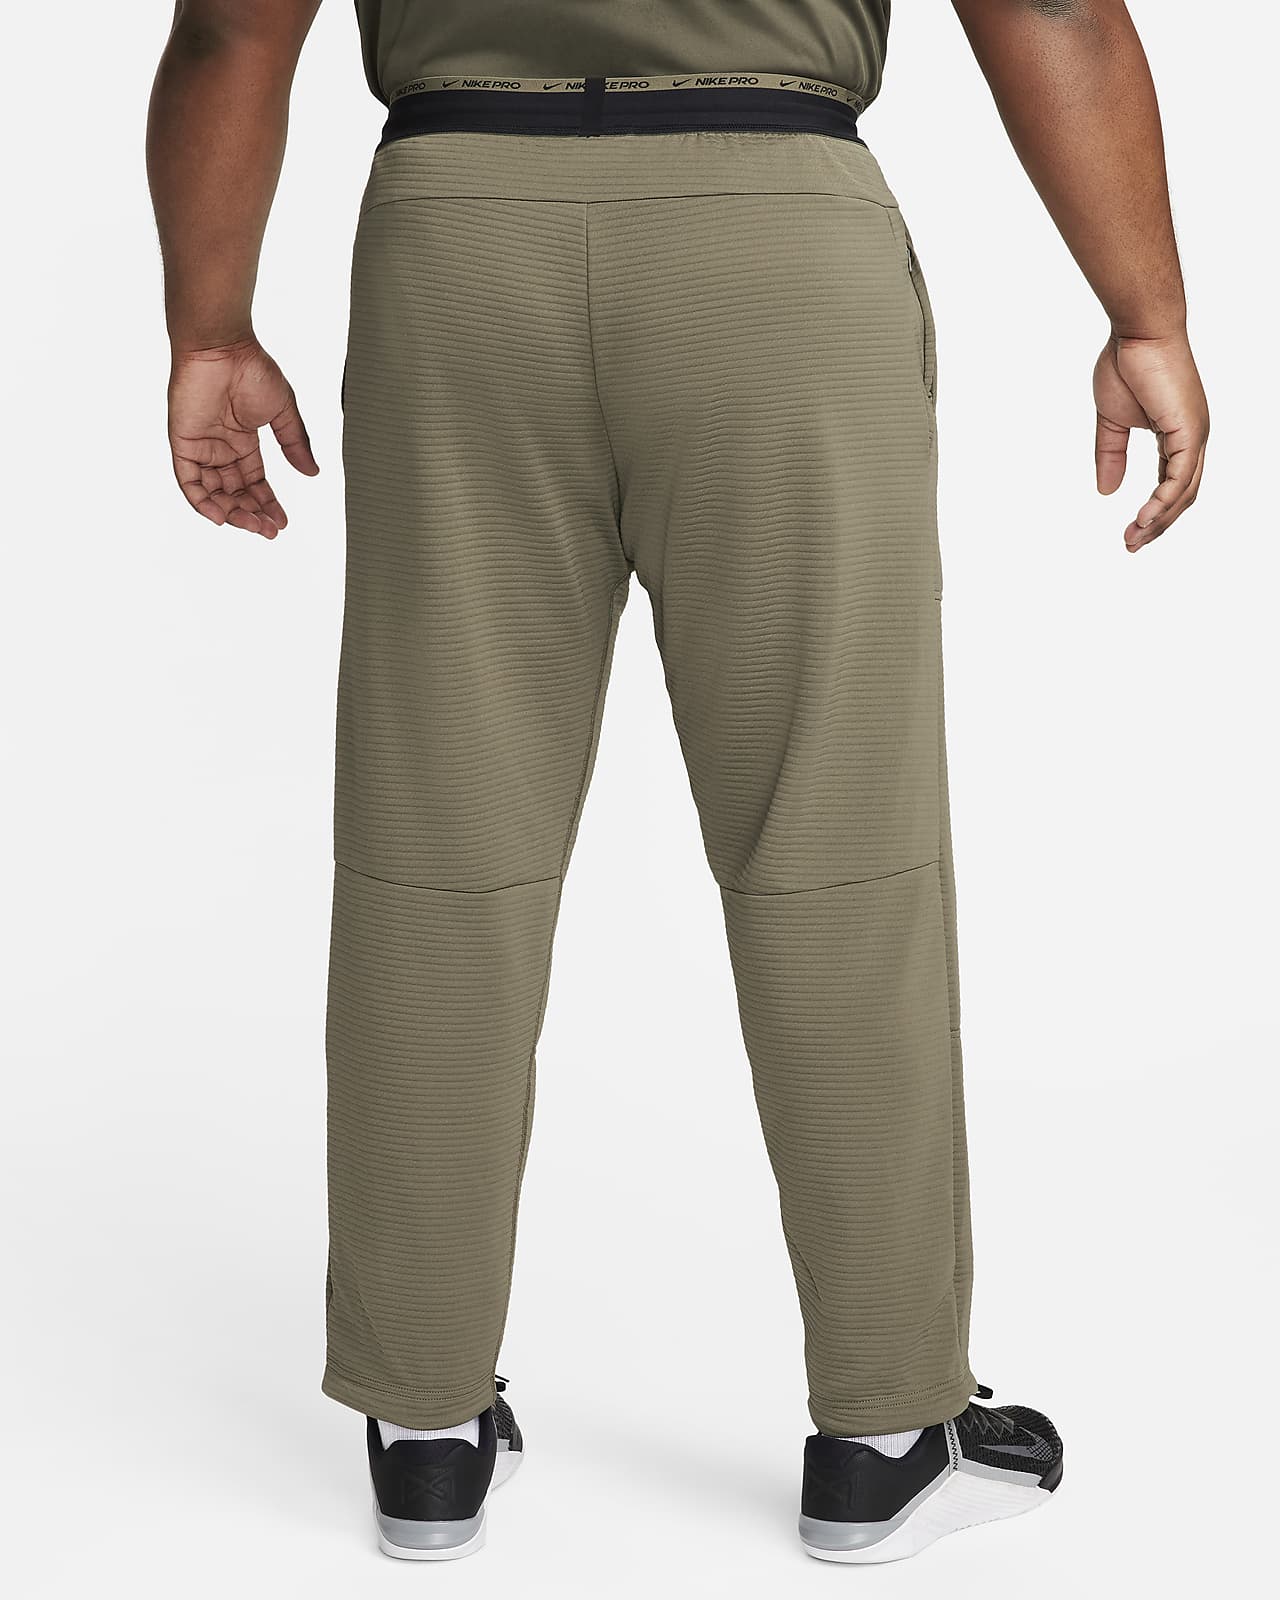 Nike Men's Dri-FIT Fleece Fitness Pants.